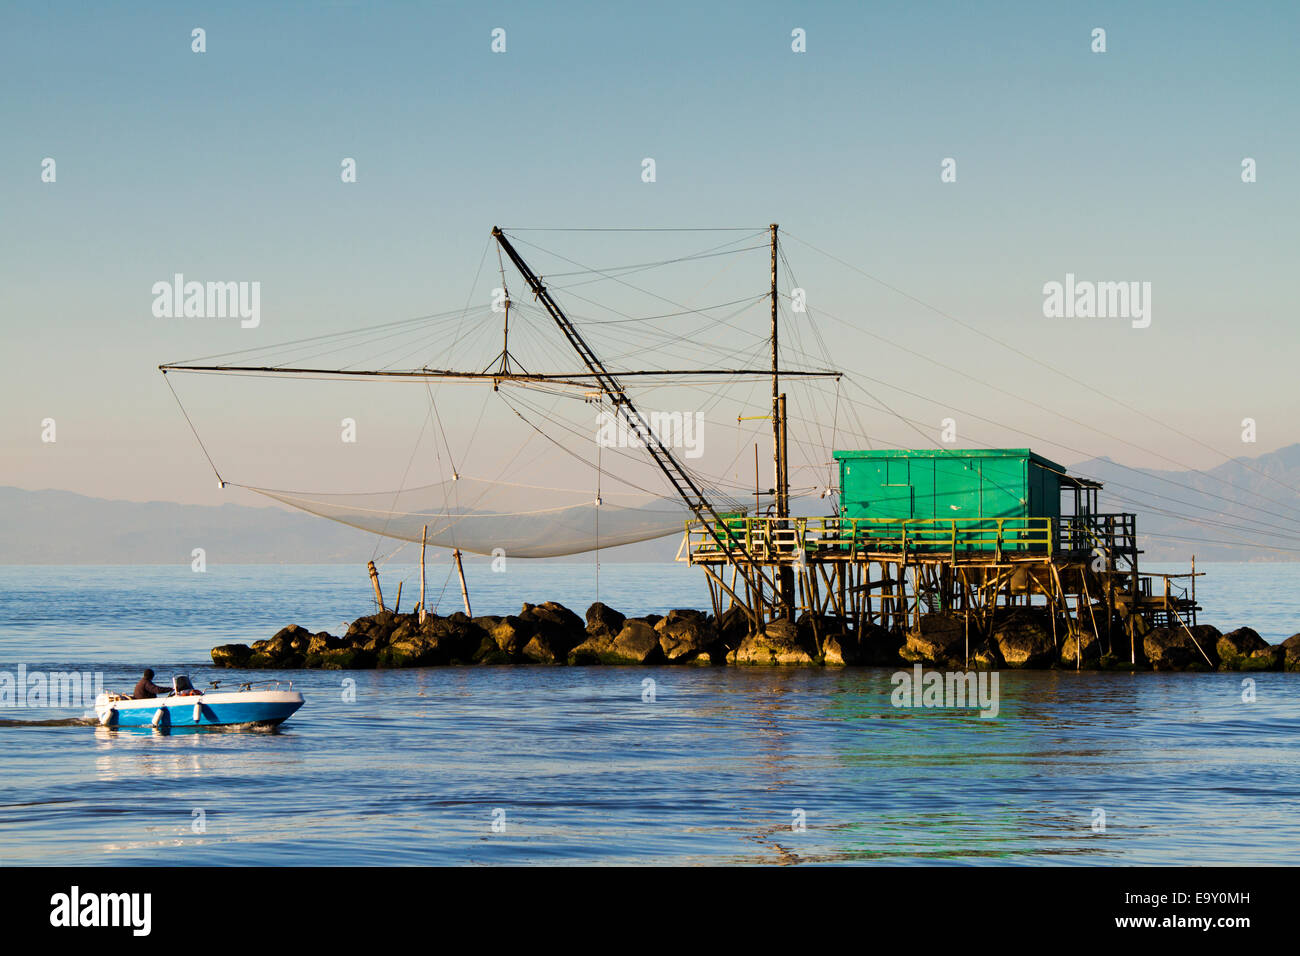 Maison de pêcheur avec un filet sur la mer à Marina di Pisa, Toscane, Italie Banque D'Images